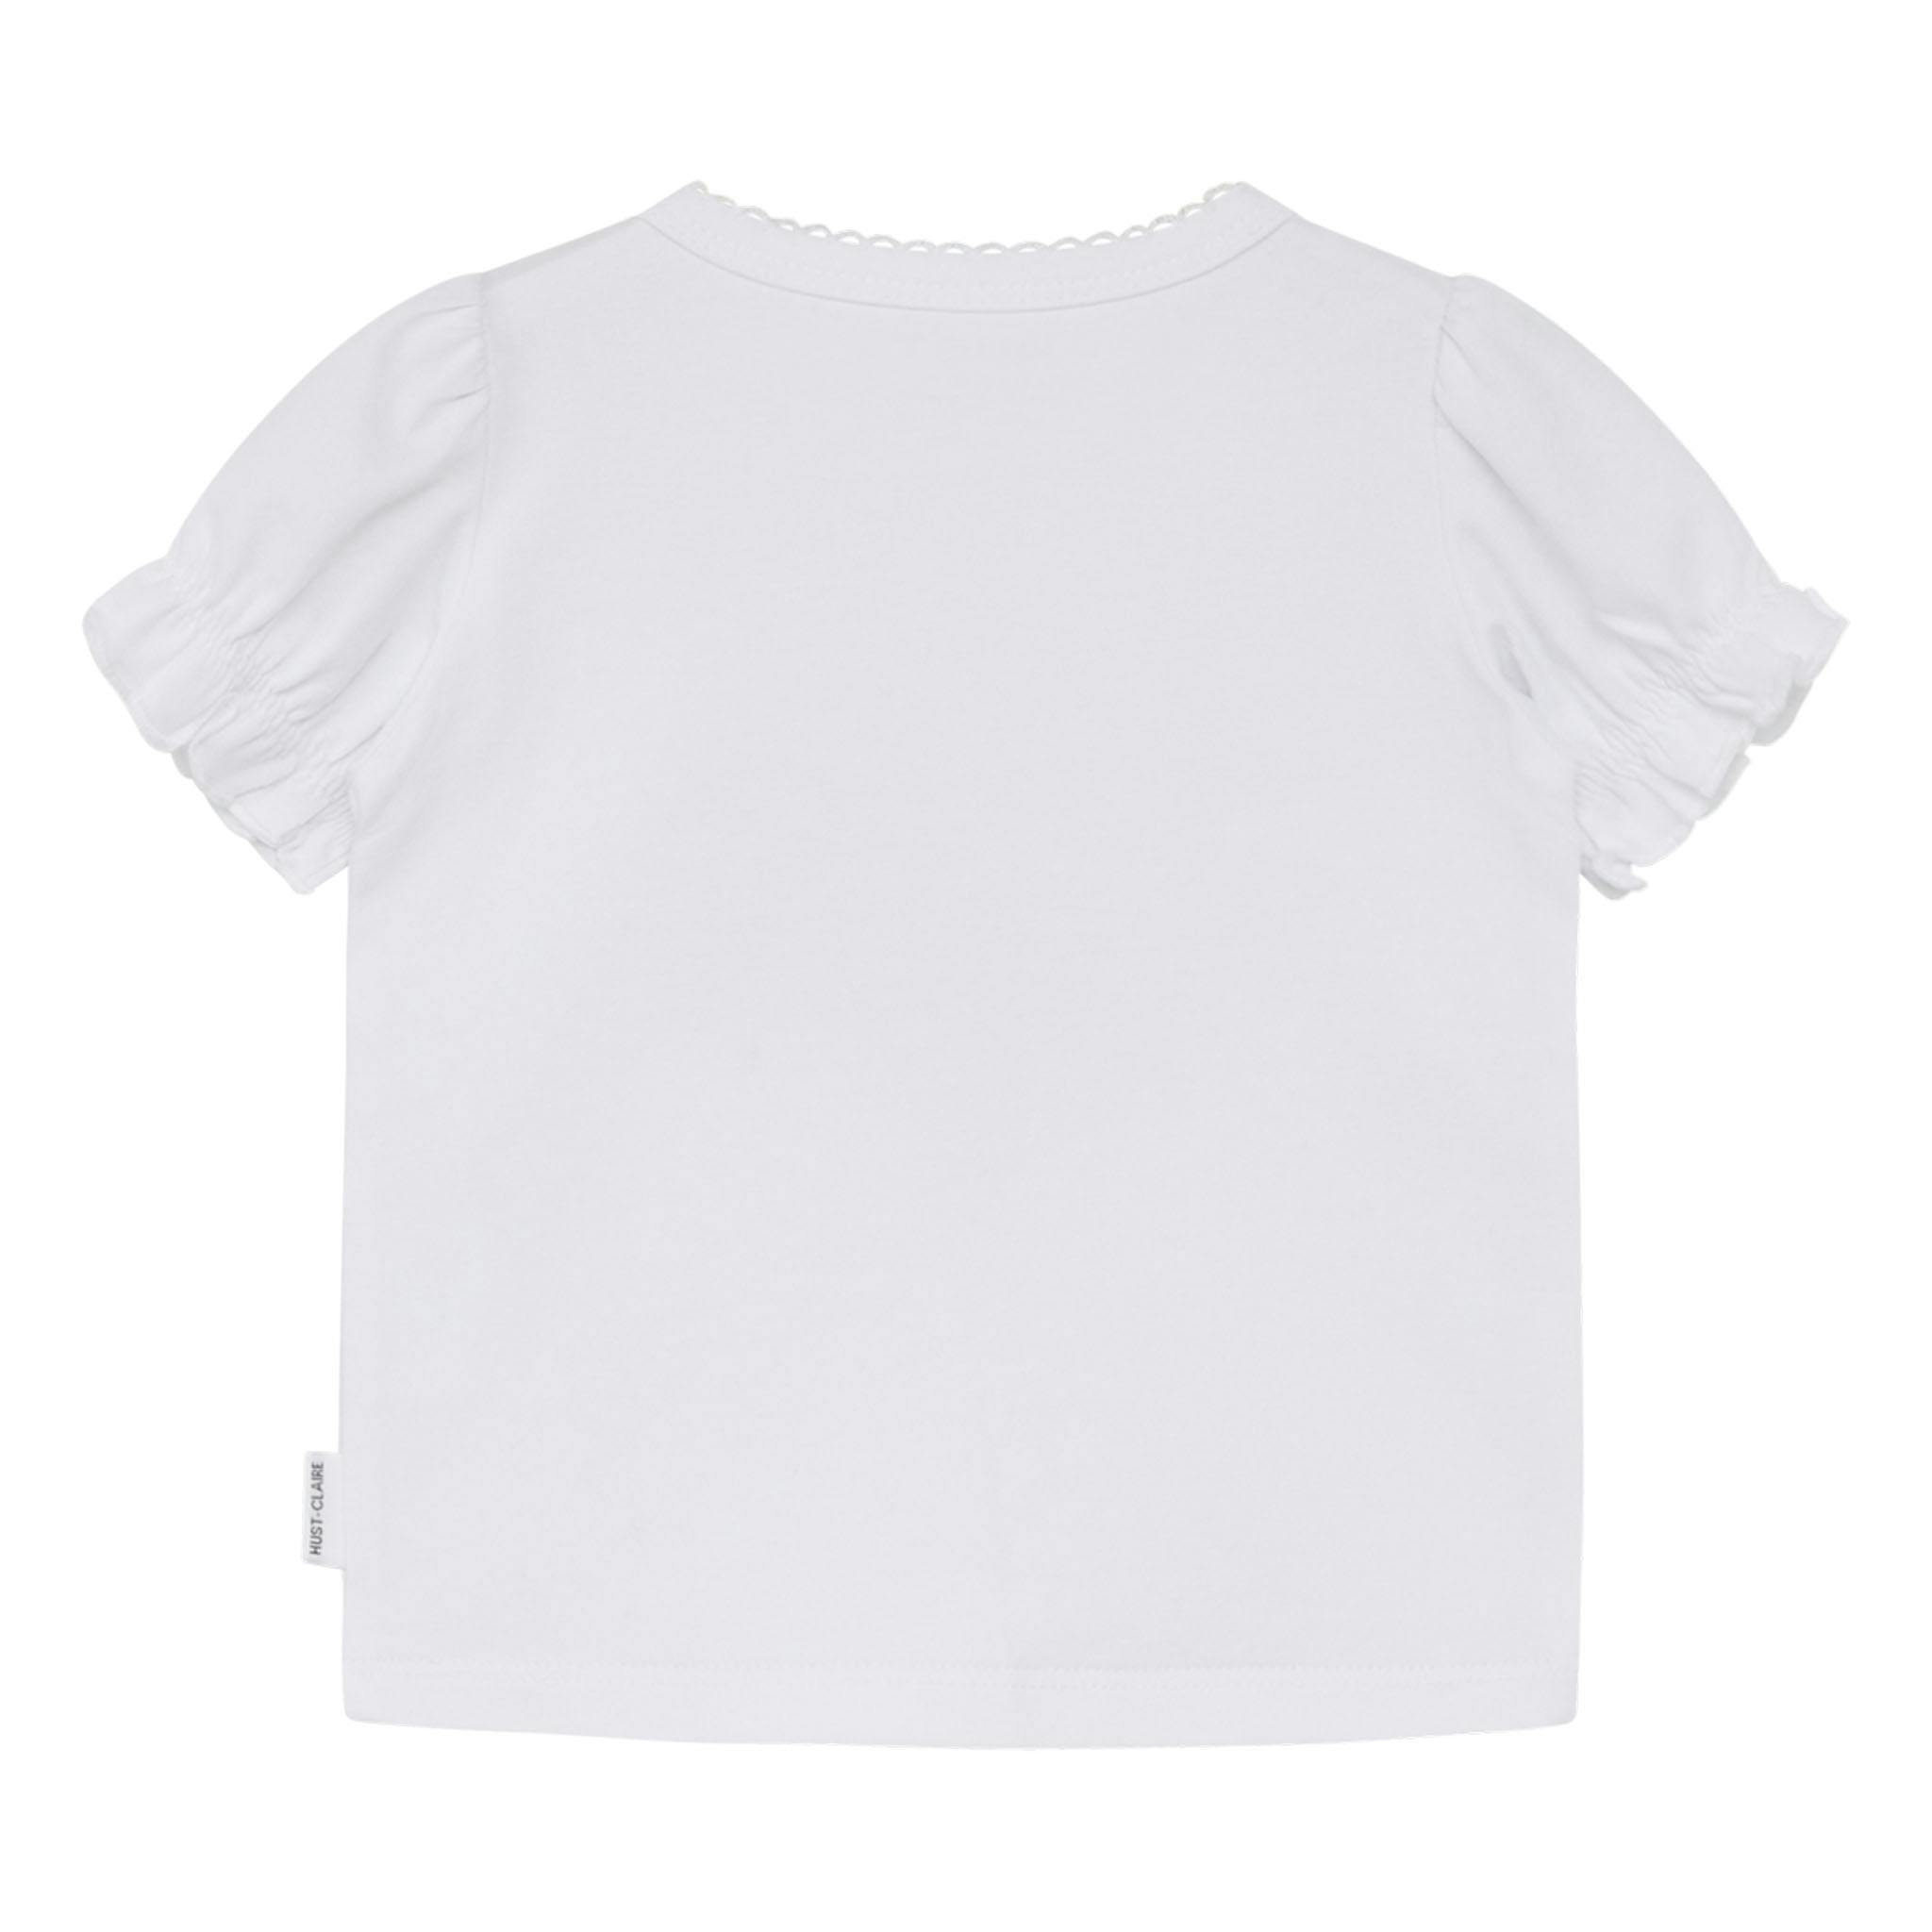 T-shirt Blancalina - tigerbaby